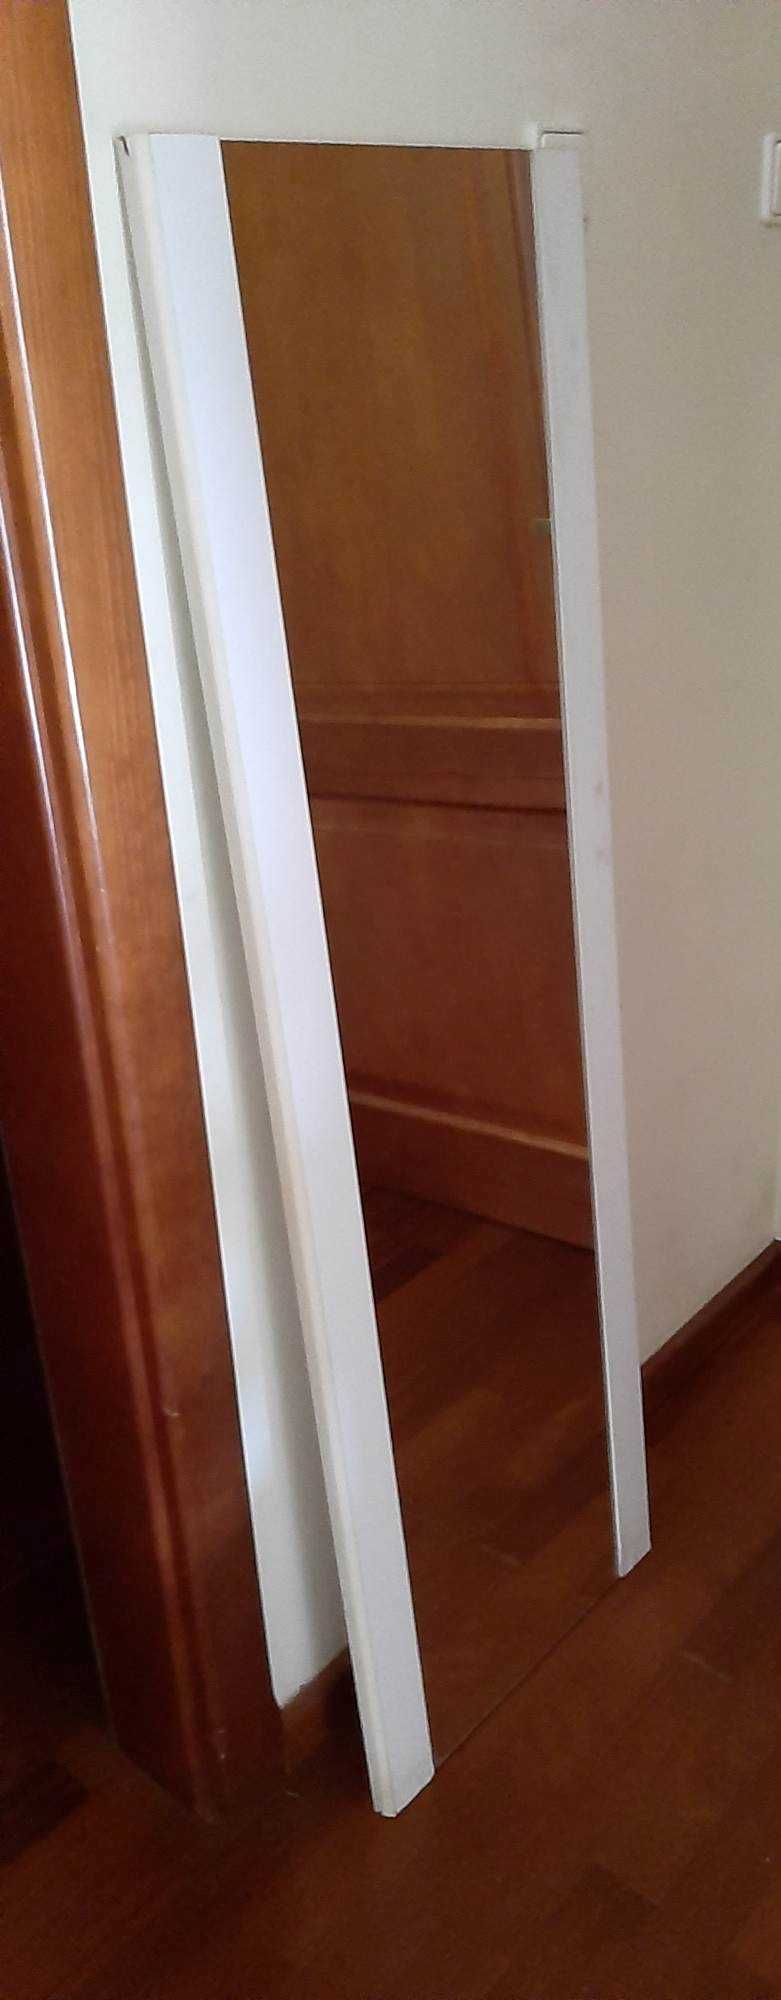 Lustra w zdemontowanych drzwiach od szafy (2 sztuki)